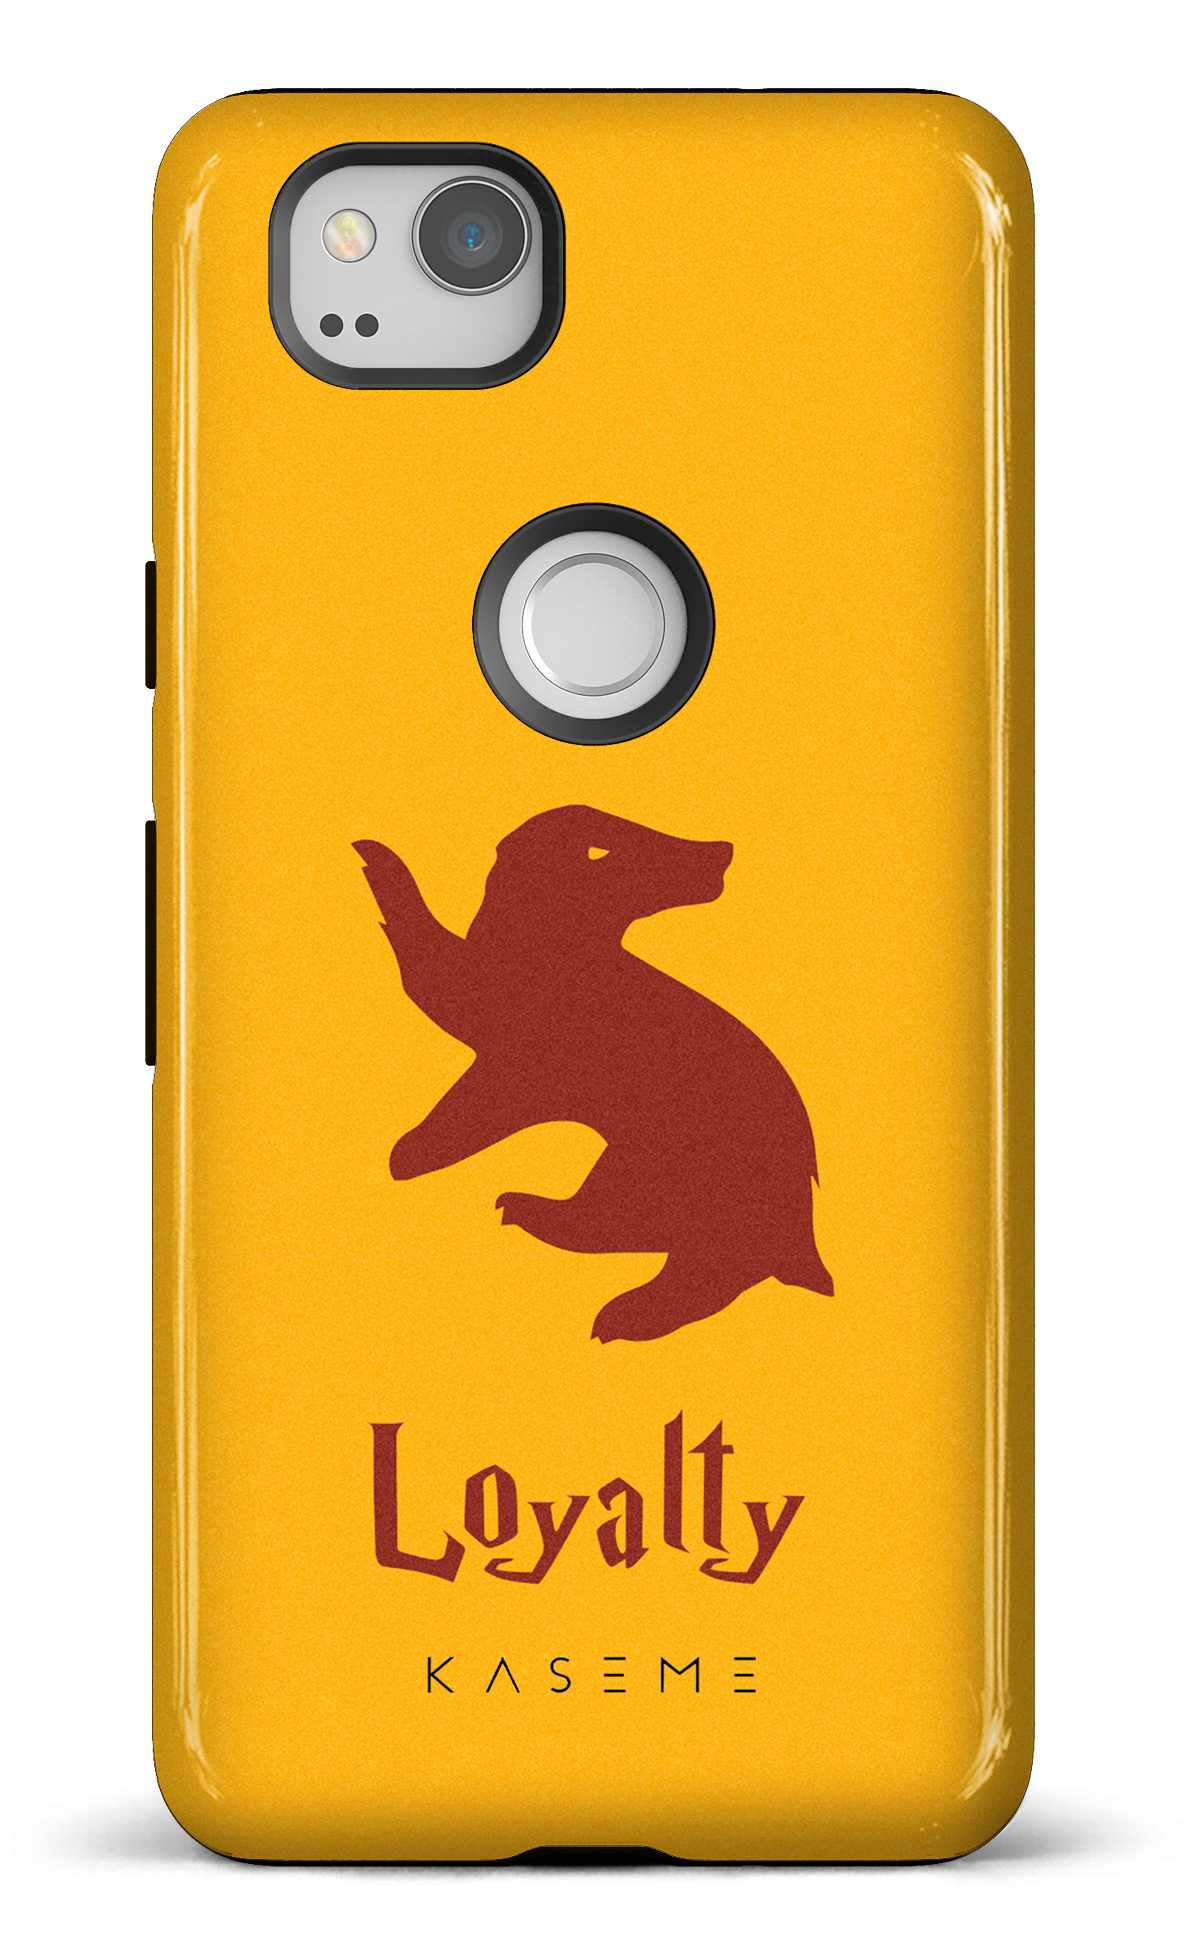 Loyalty - Google Pixel 2